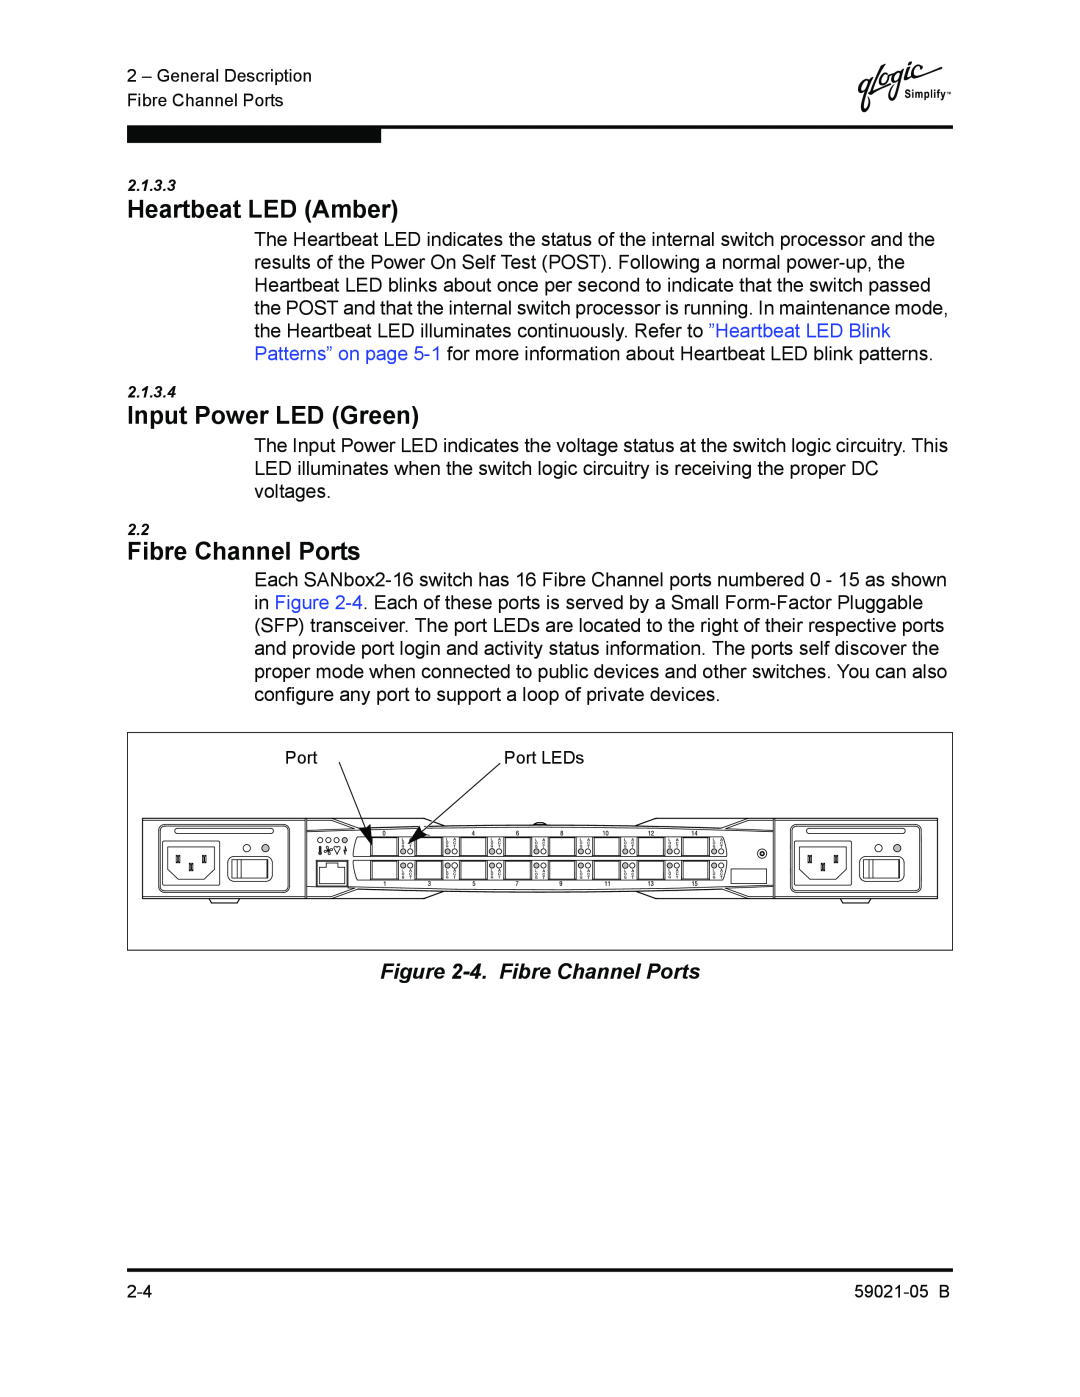 Q-Logic 59021-05 B manual Heartbeat LED Amber, Input Power LED Green, 4. Fibre Channel Ports 